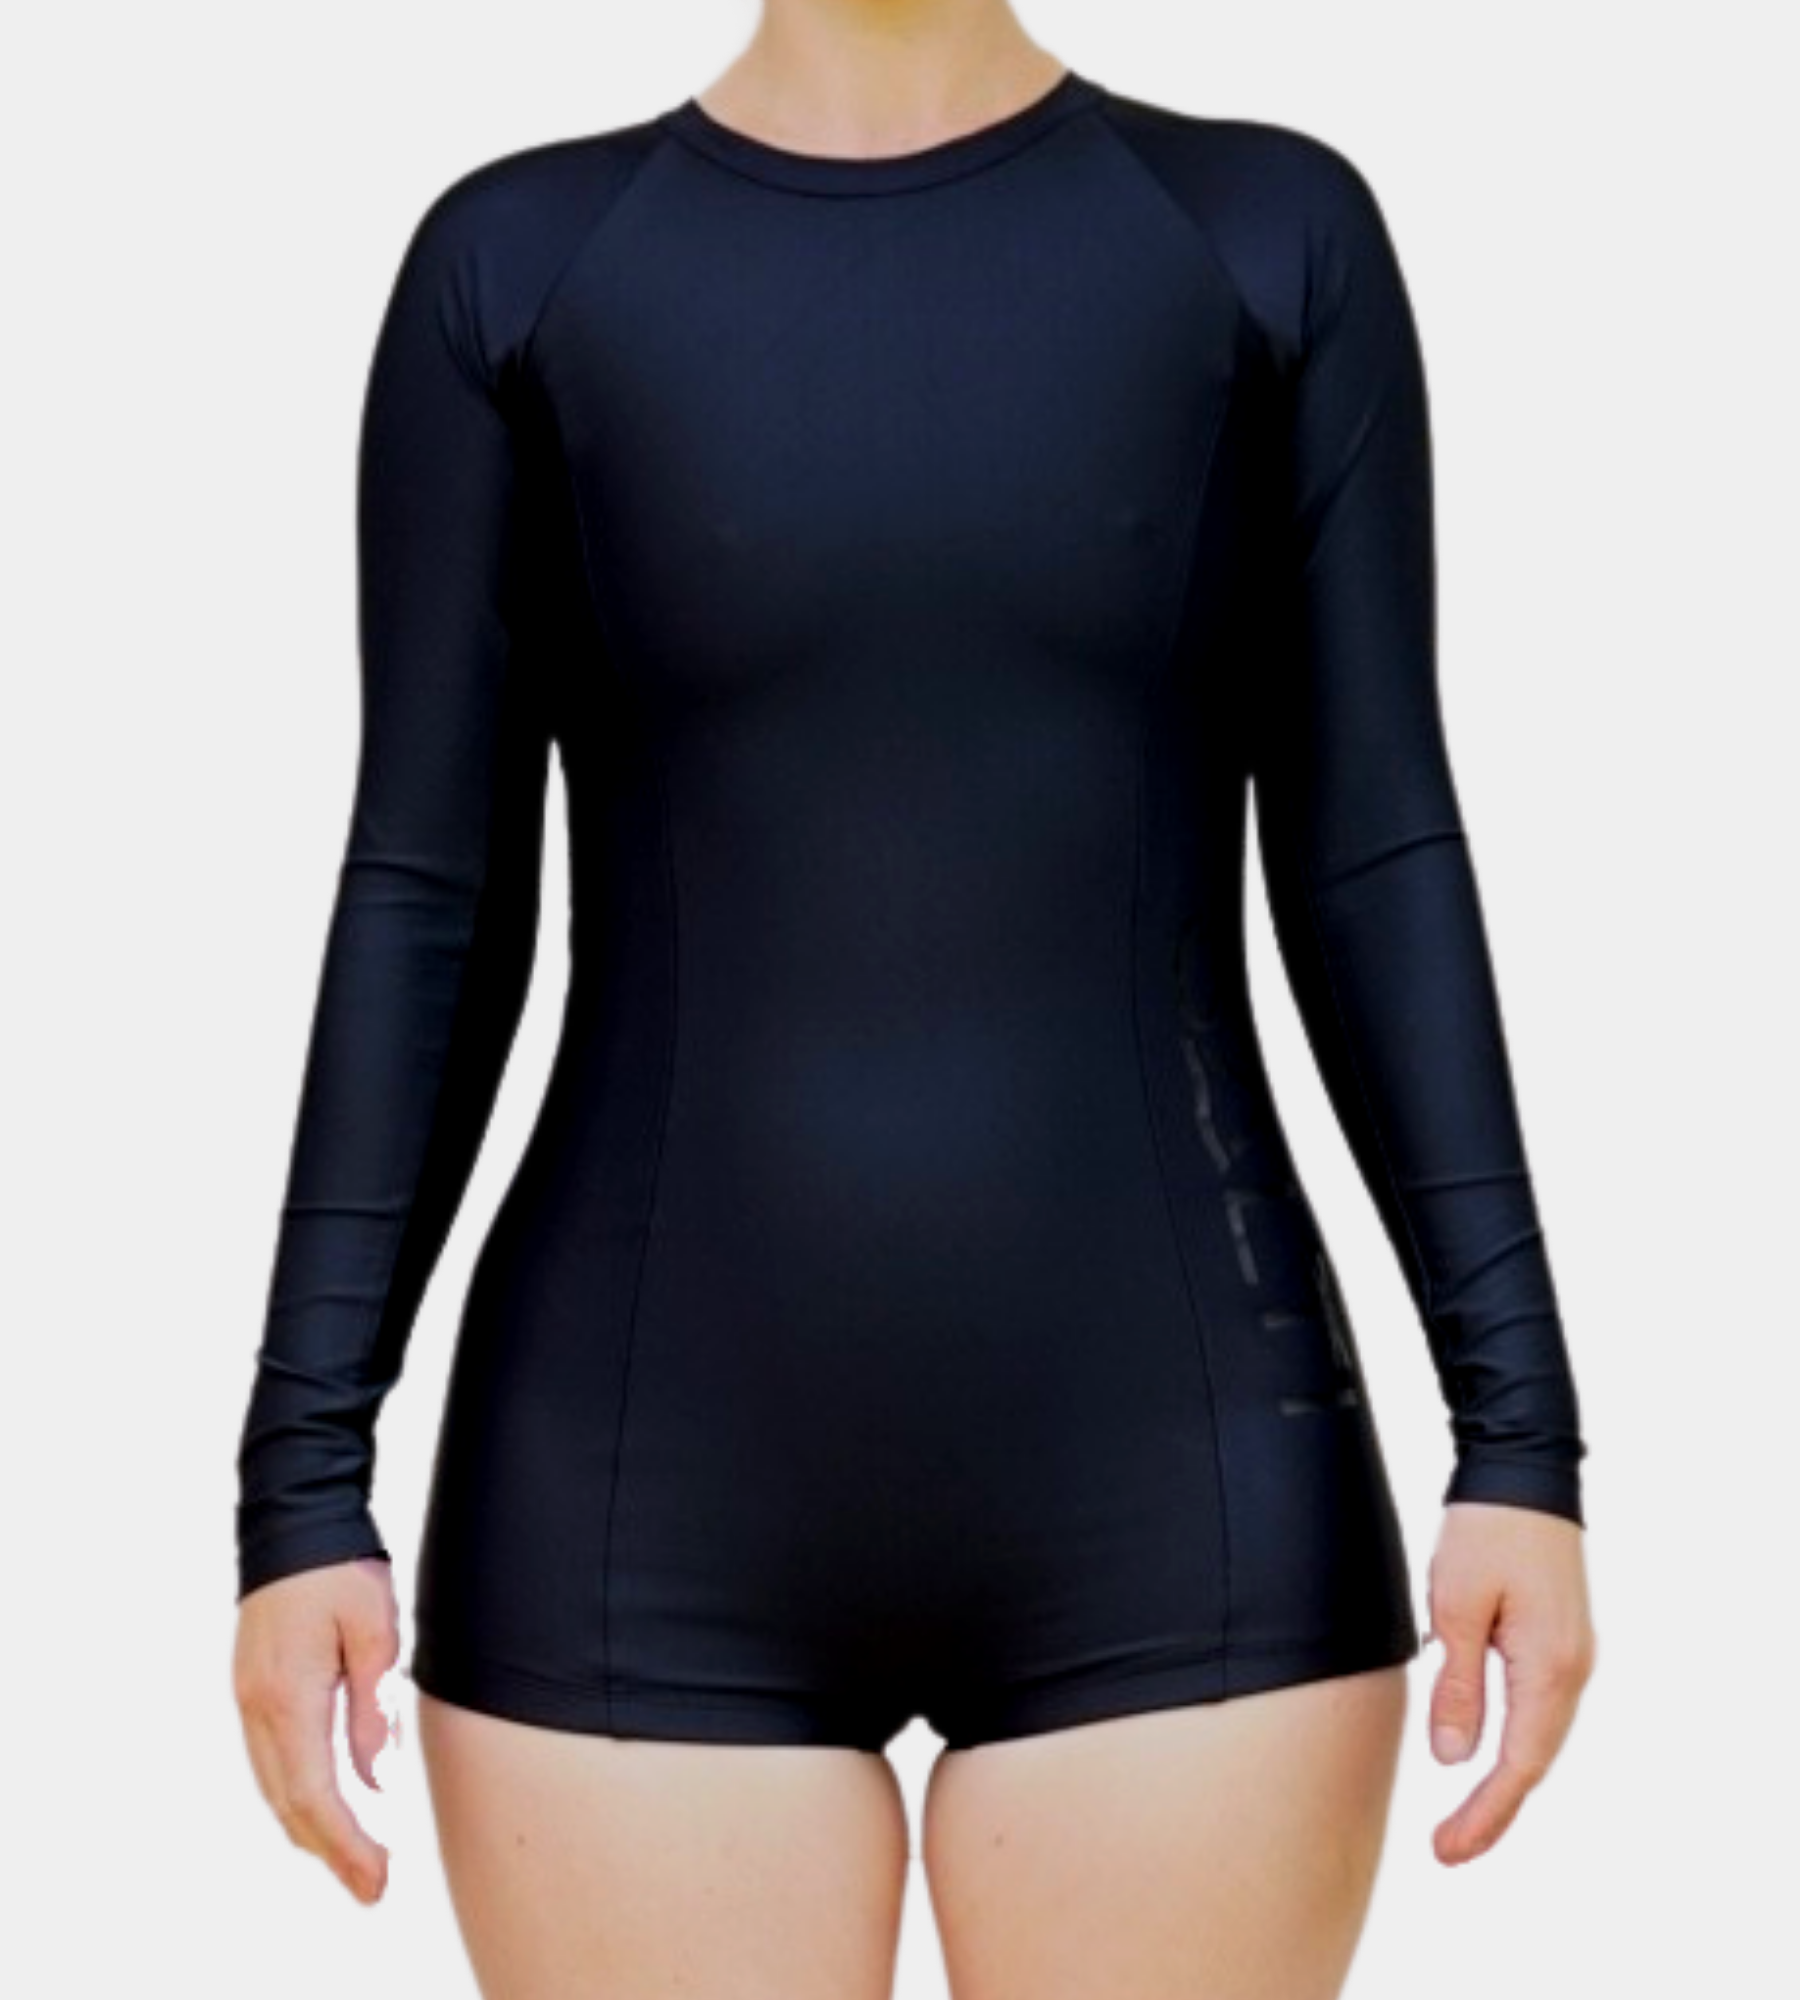 Black Swim Suit